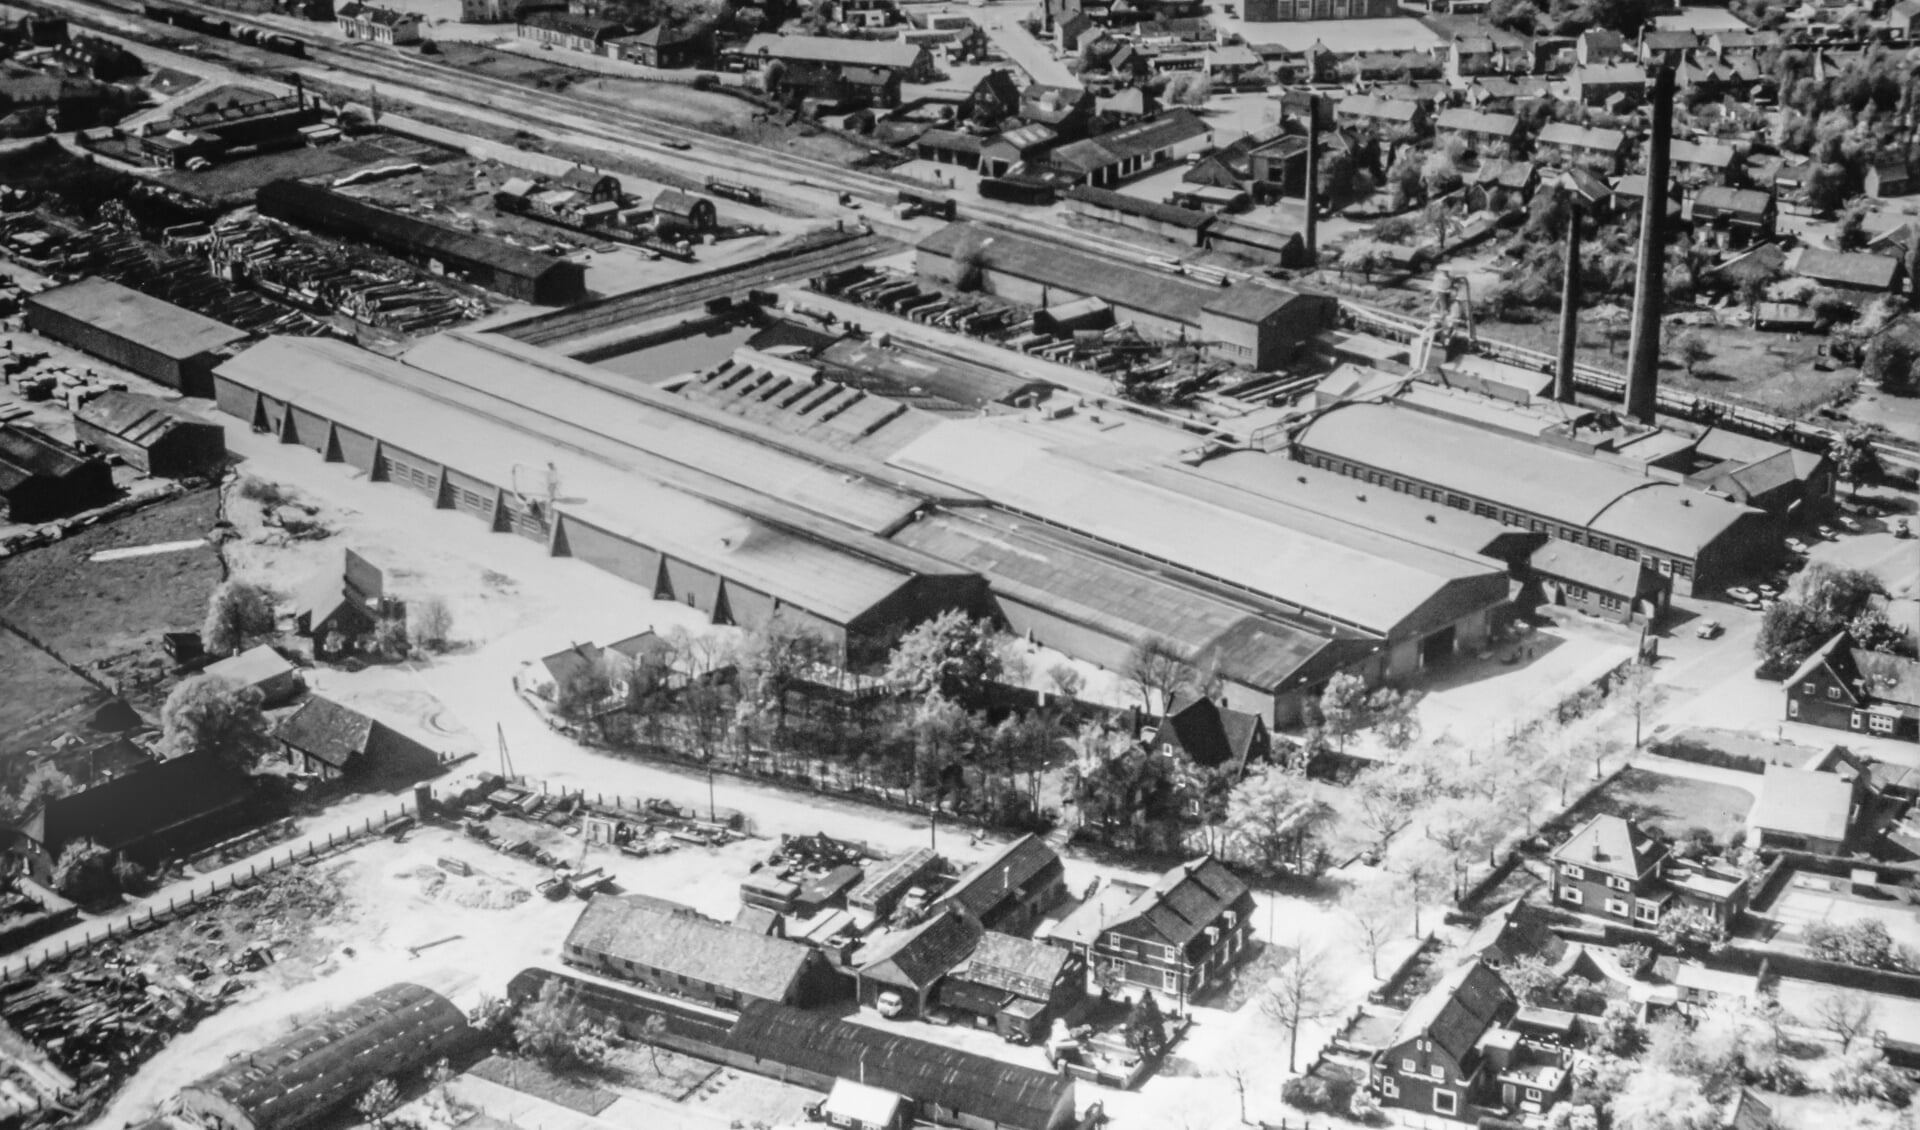 Houtfabriek van Hout in Mill.